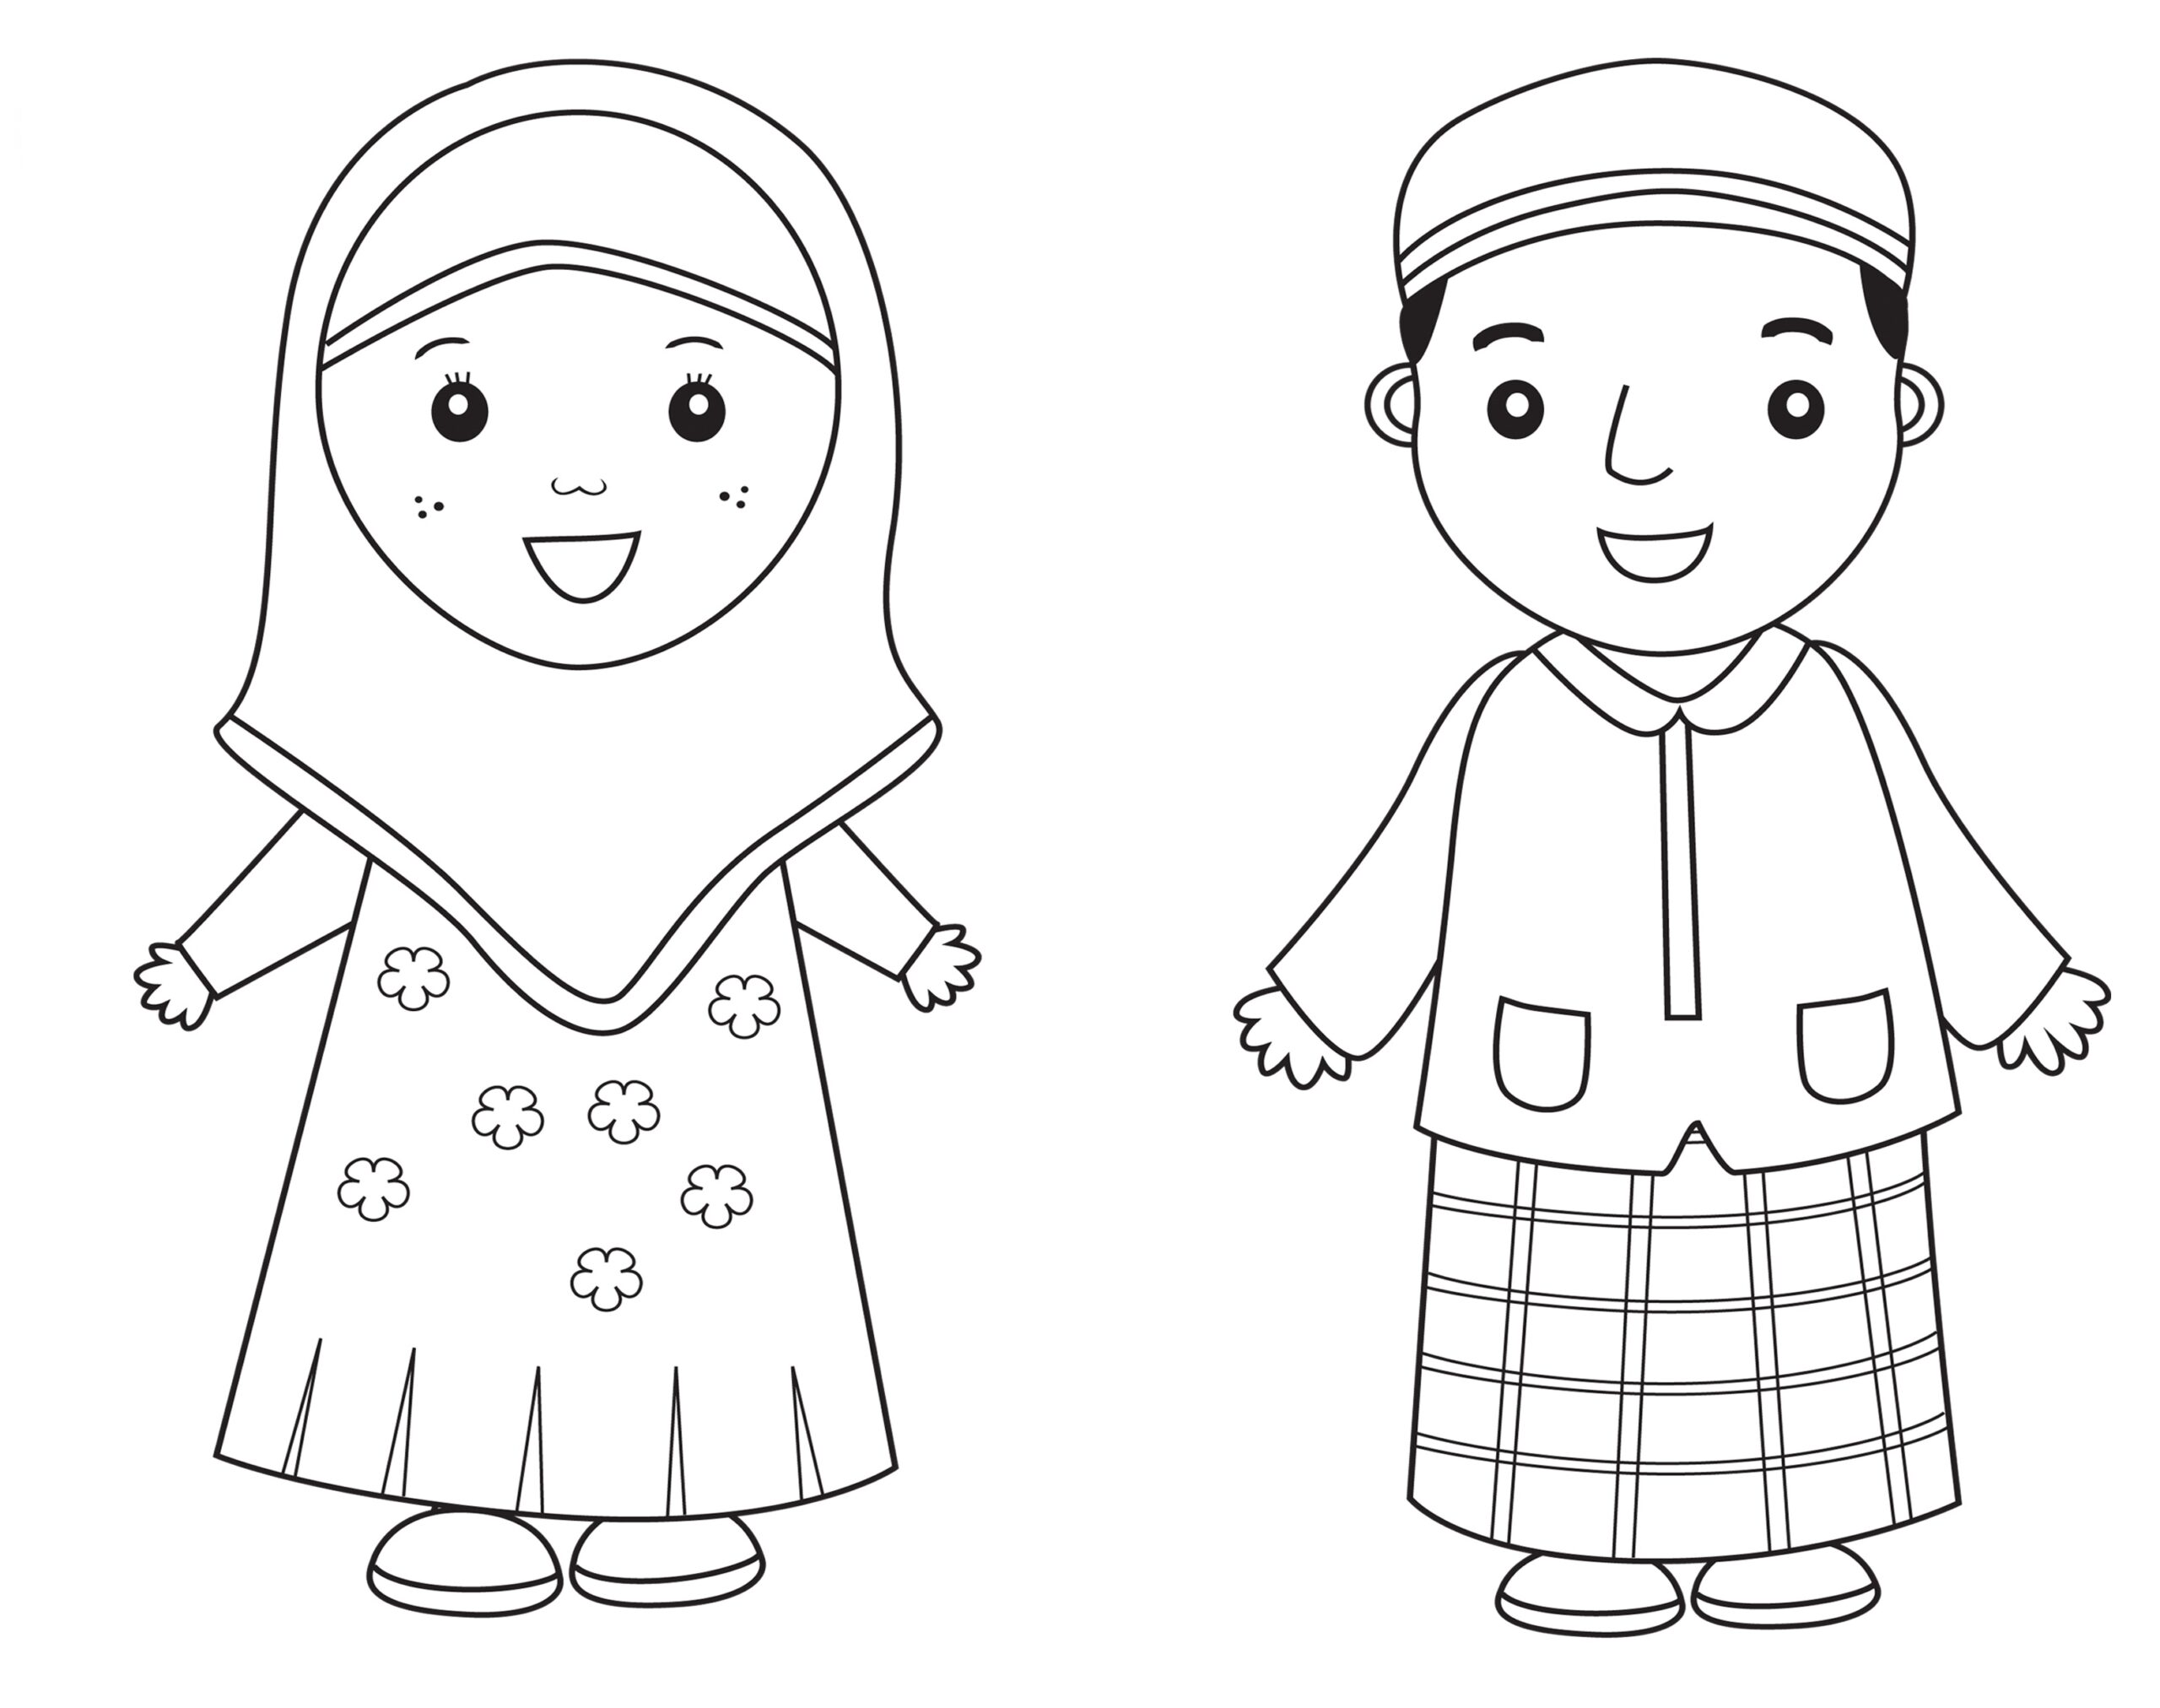 contoh mewarnai gambar anak laki laki dan perempuan muslim